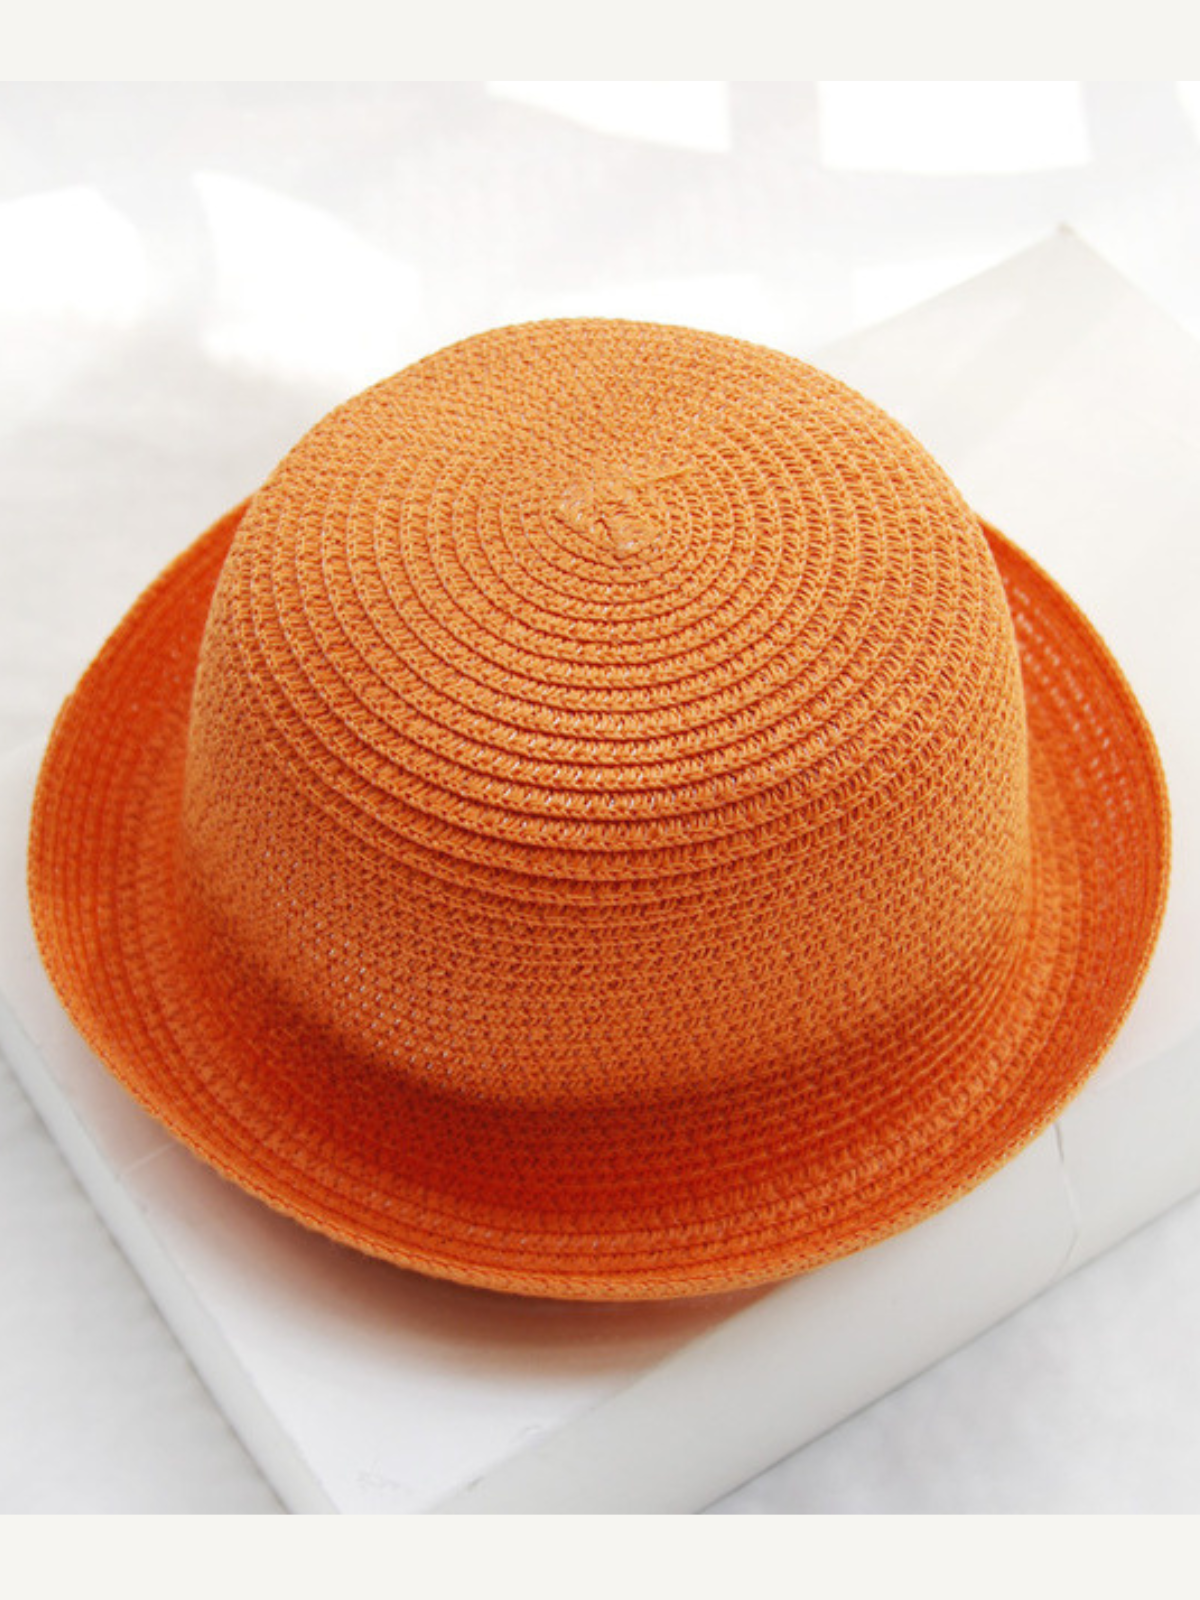 Runway-Ready Orange Bowler Hat